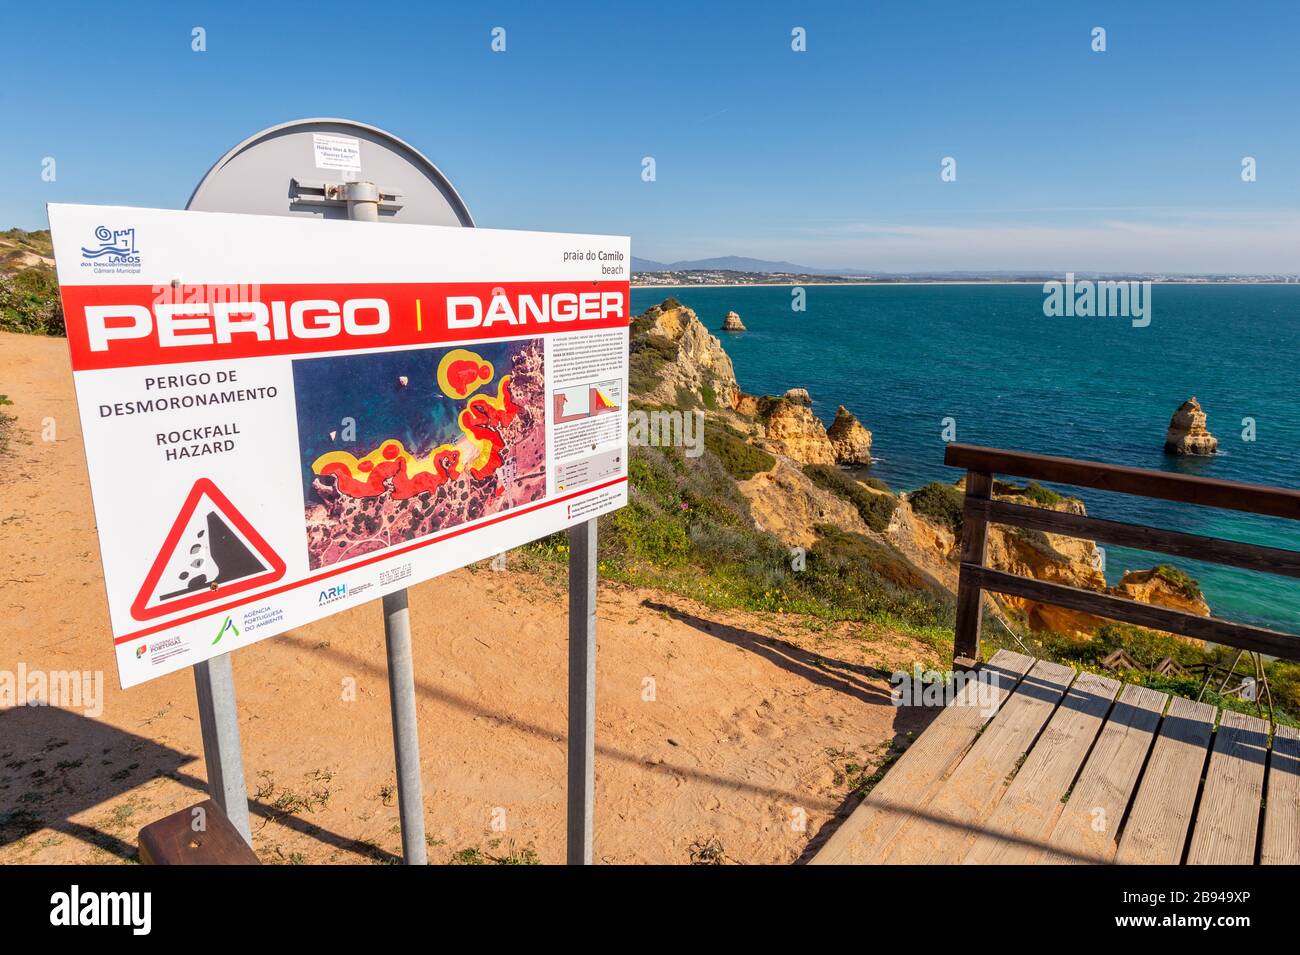 Lagos, Portugal - 7 March 2020: Rockfall hazard danger sign at Praia do Camilo beach Stock Photo